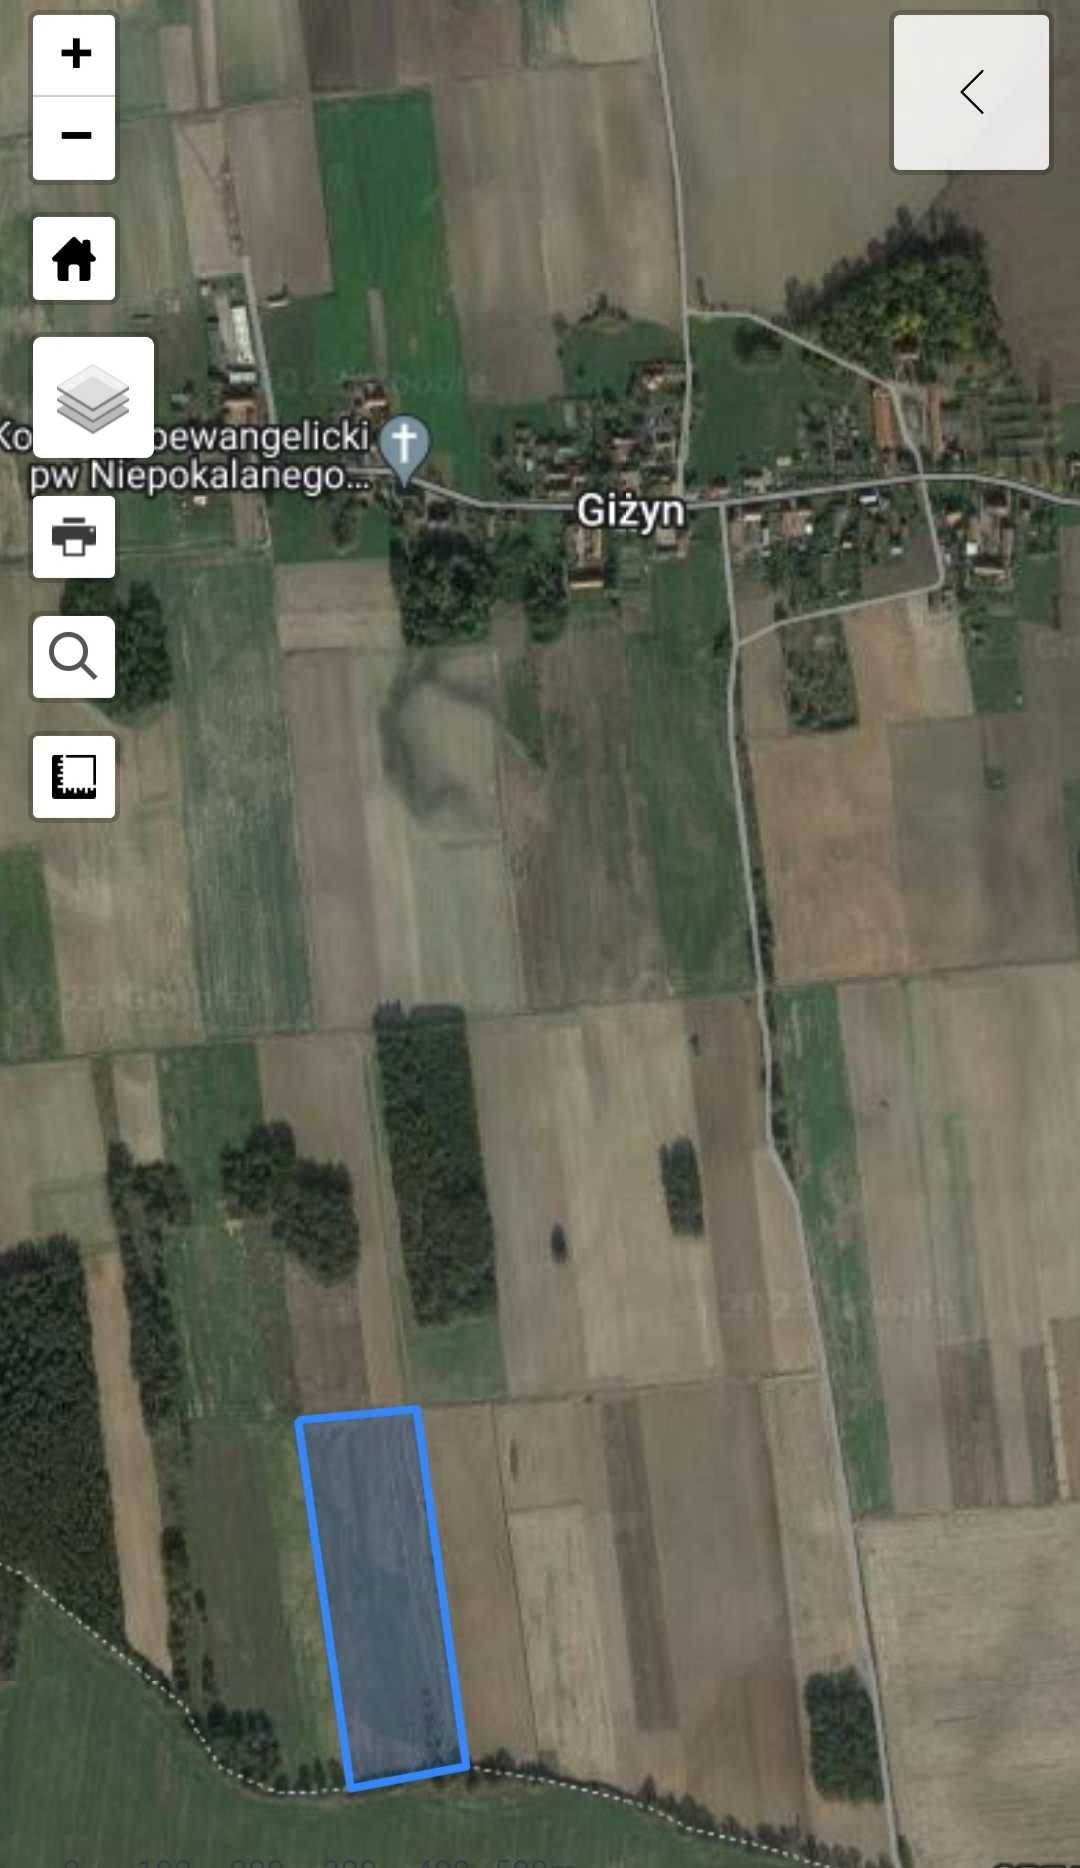 Sprzedam ziemię / działki rolne łącznie 8.01 ha Giżyn / Bojanowo